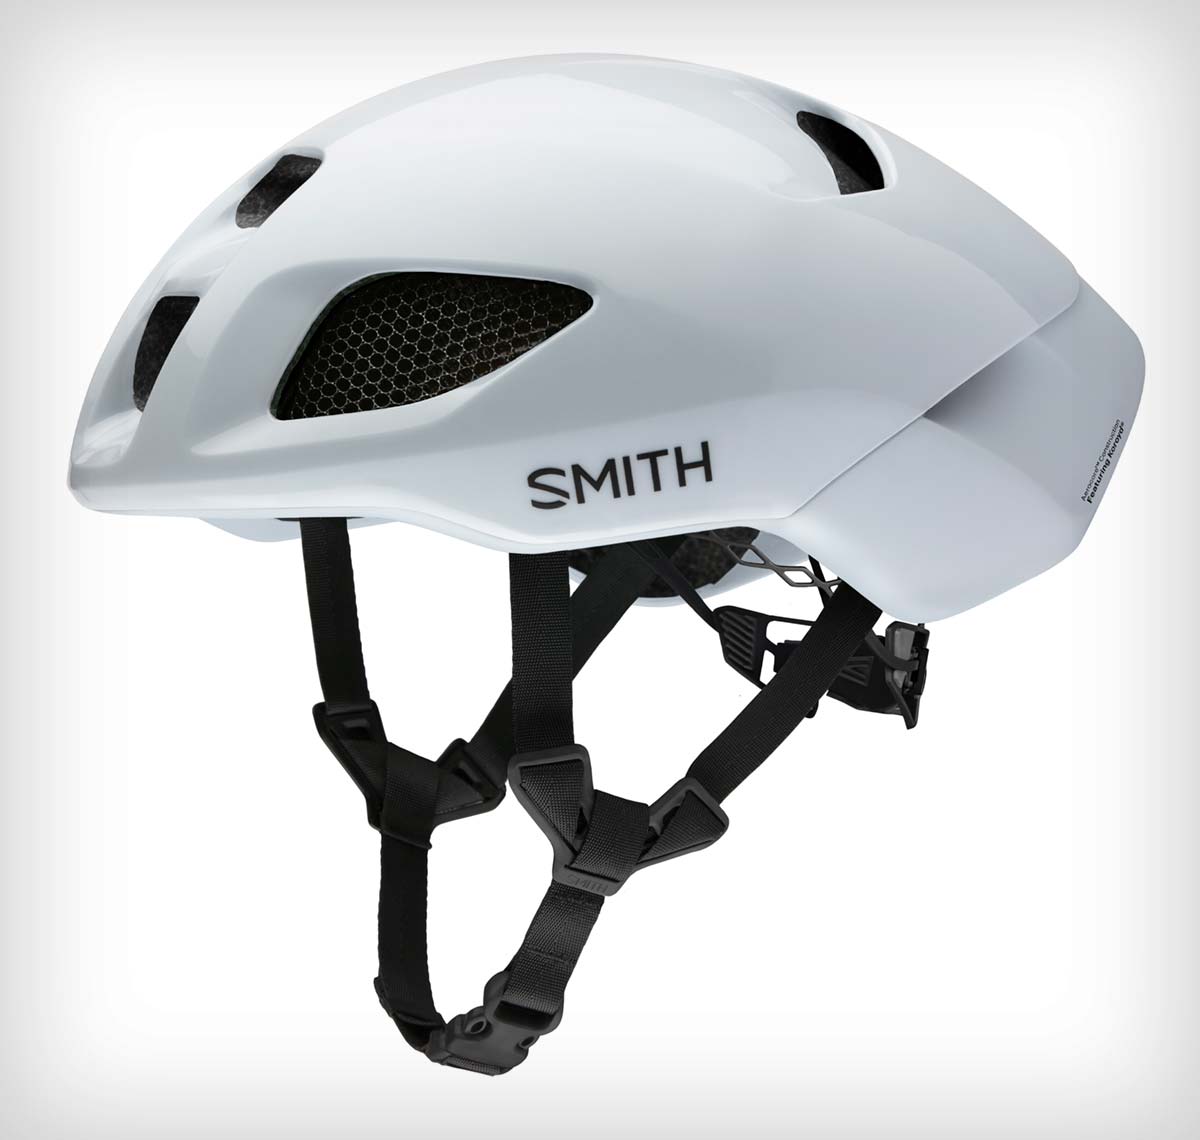 En TodoMountainBike: La colección de cascos Smith 2022 se actualiza con modelos MIPS, más colores y nuevo casco para contrarreloj